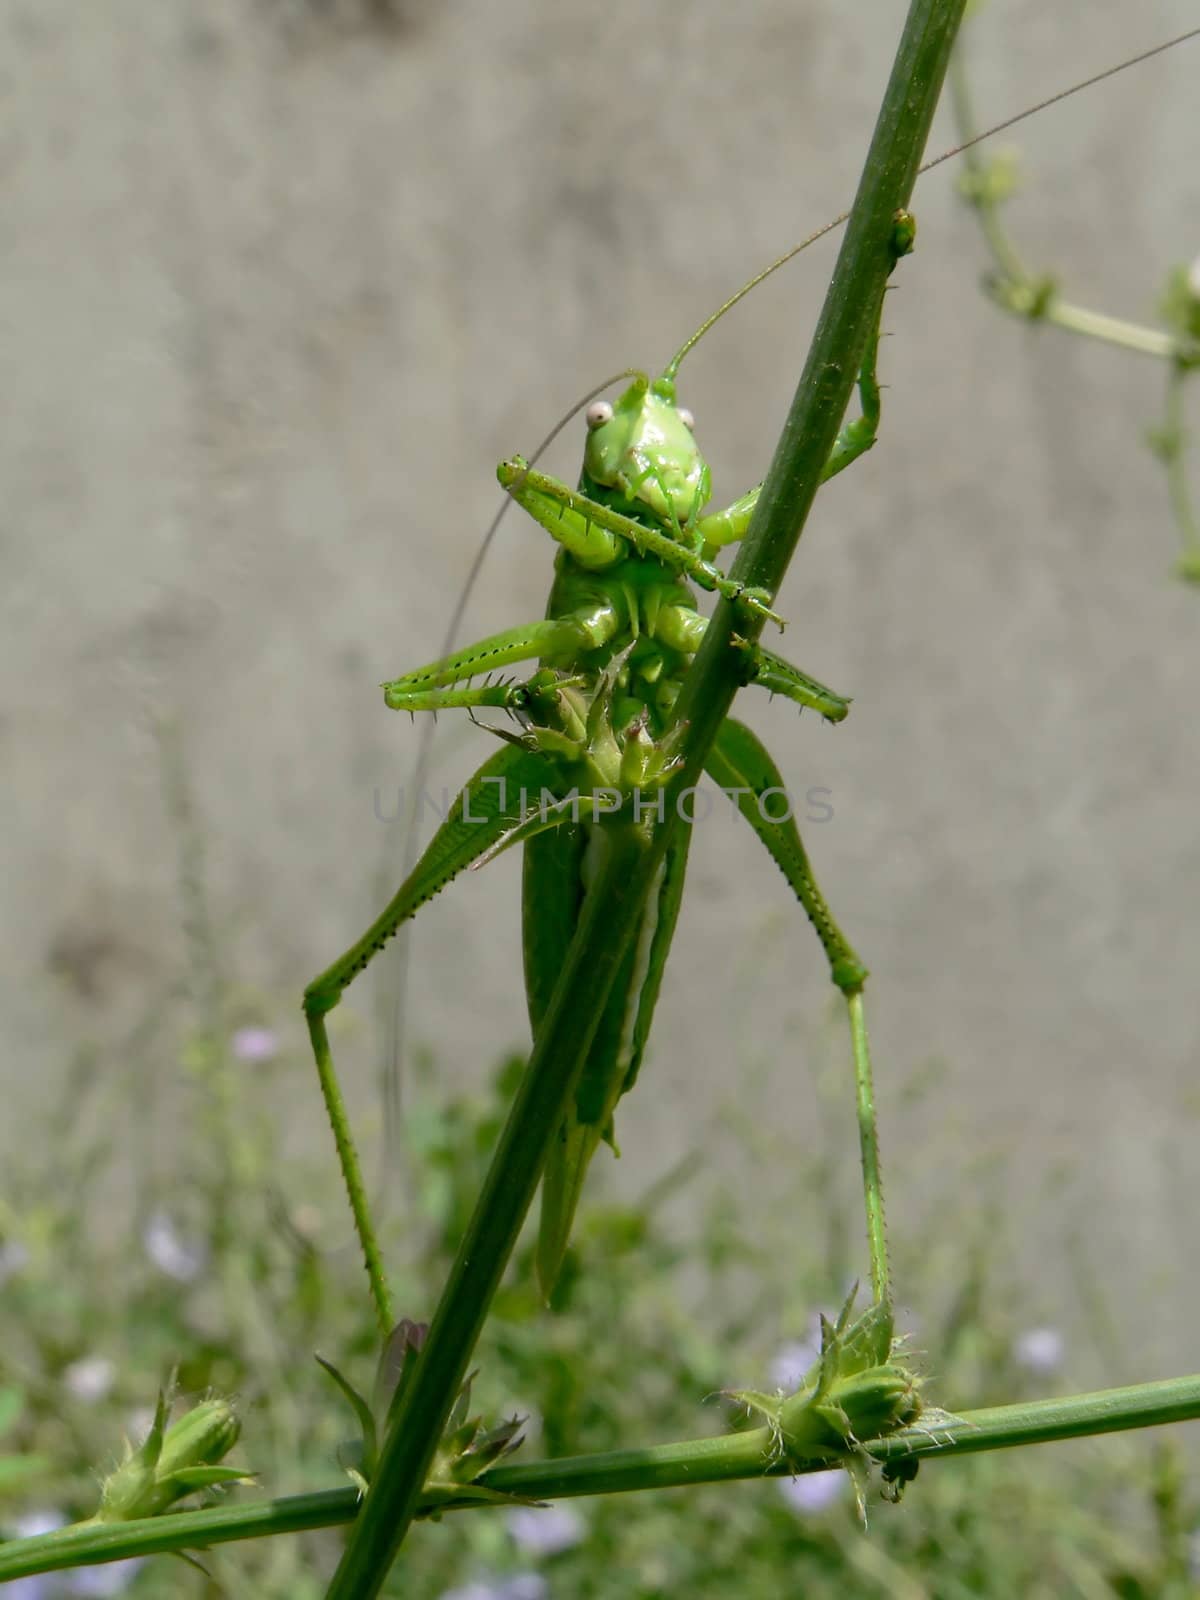 Grasshopper  by ichip